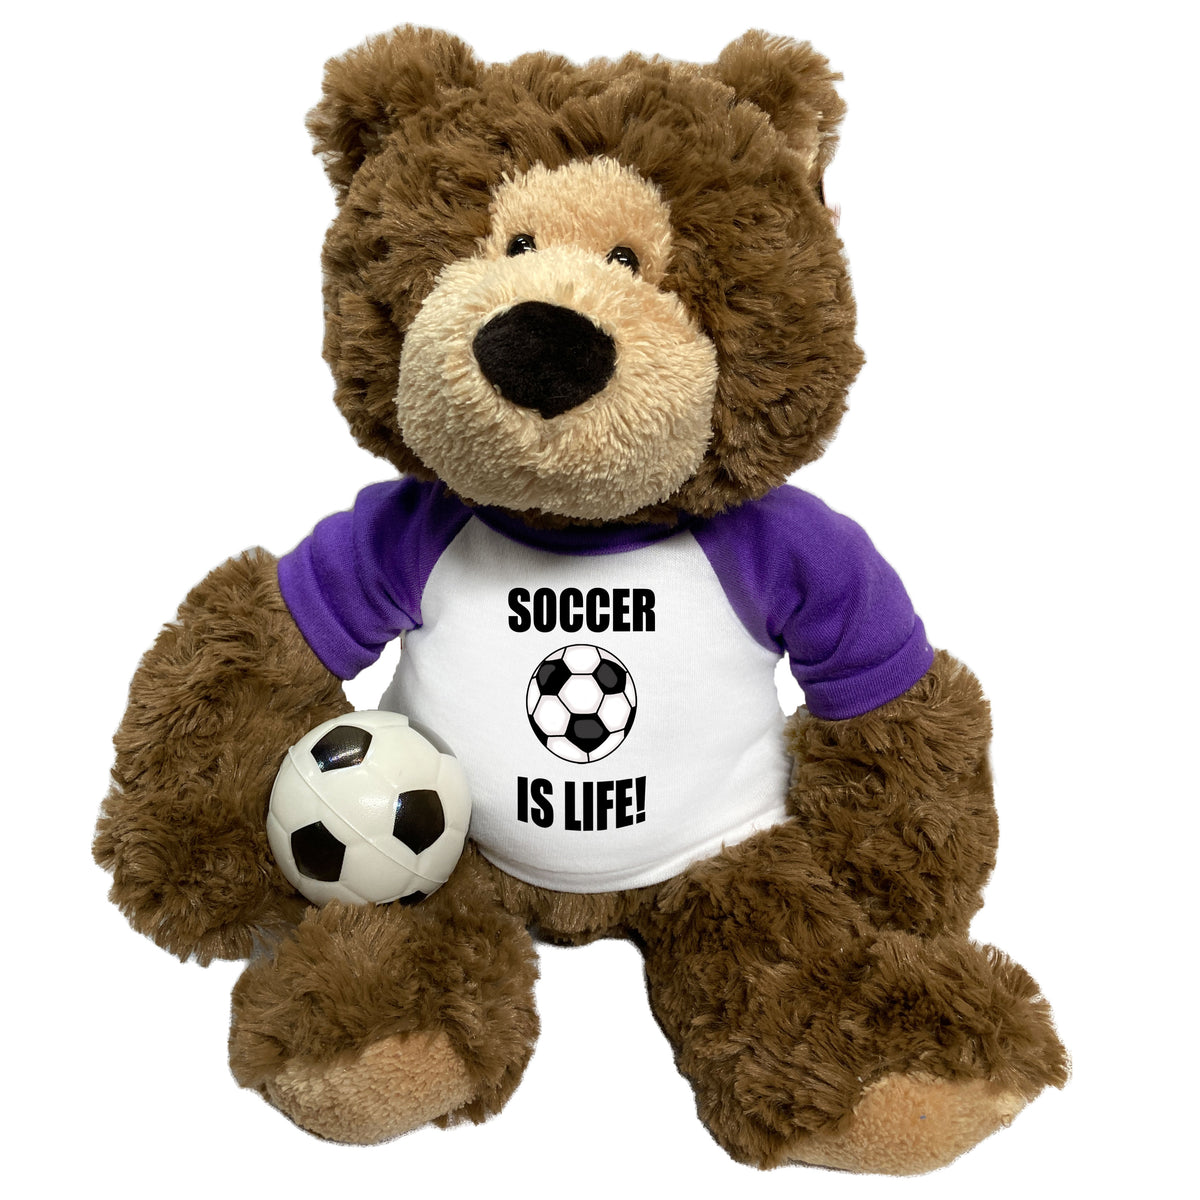 Soccer Teddy Bear - Personalized 14" Bear Hugs